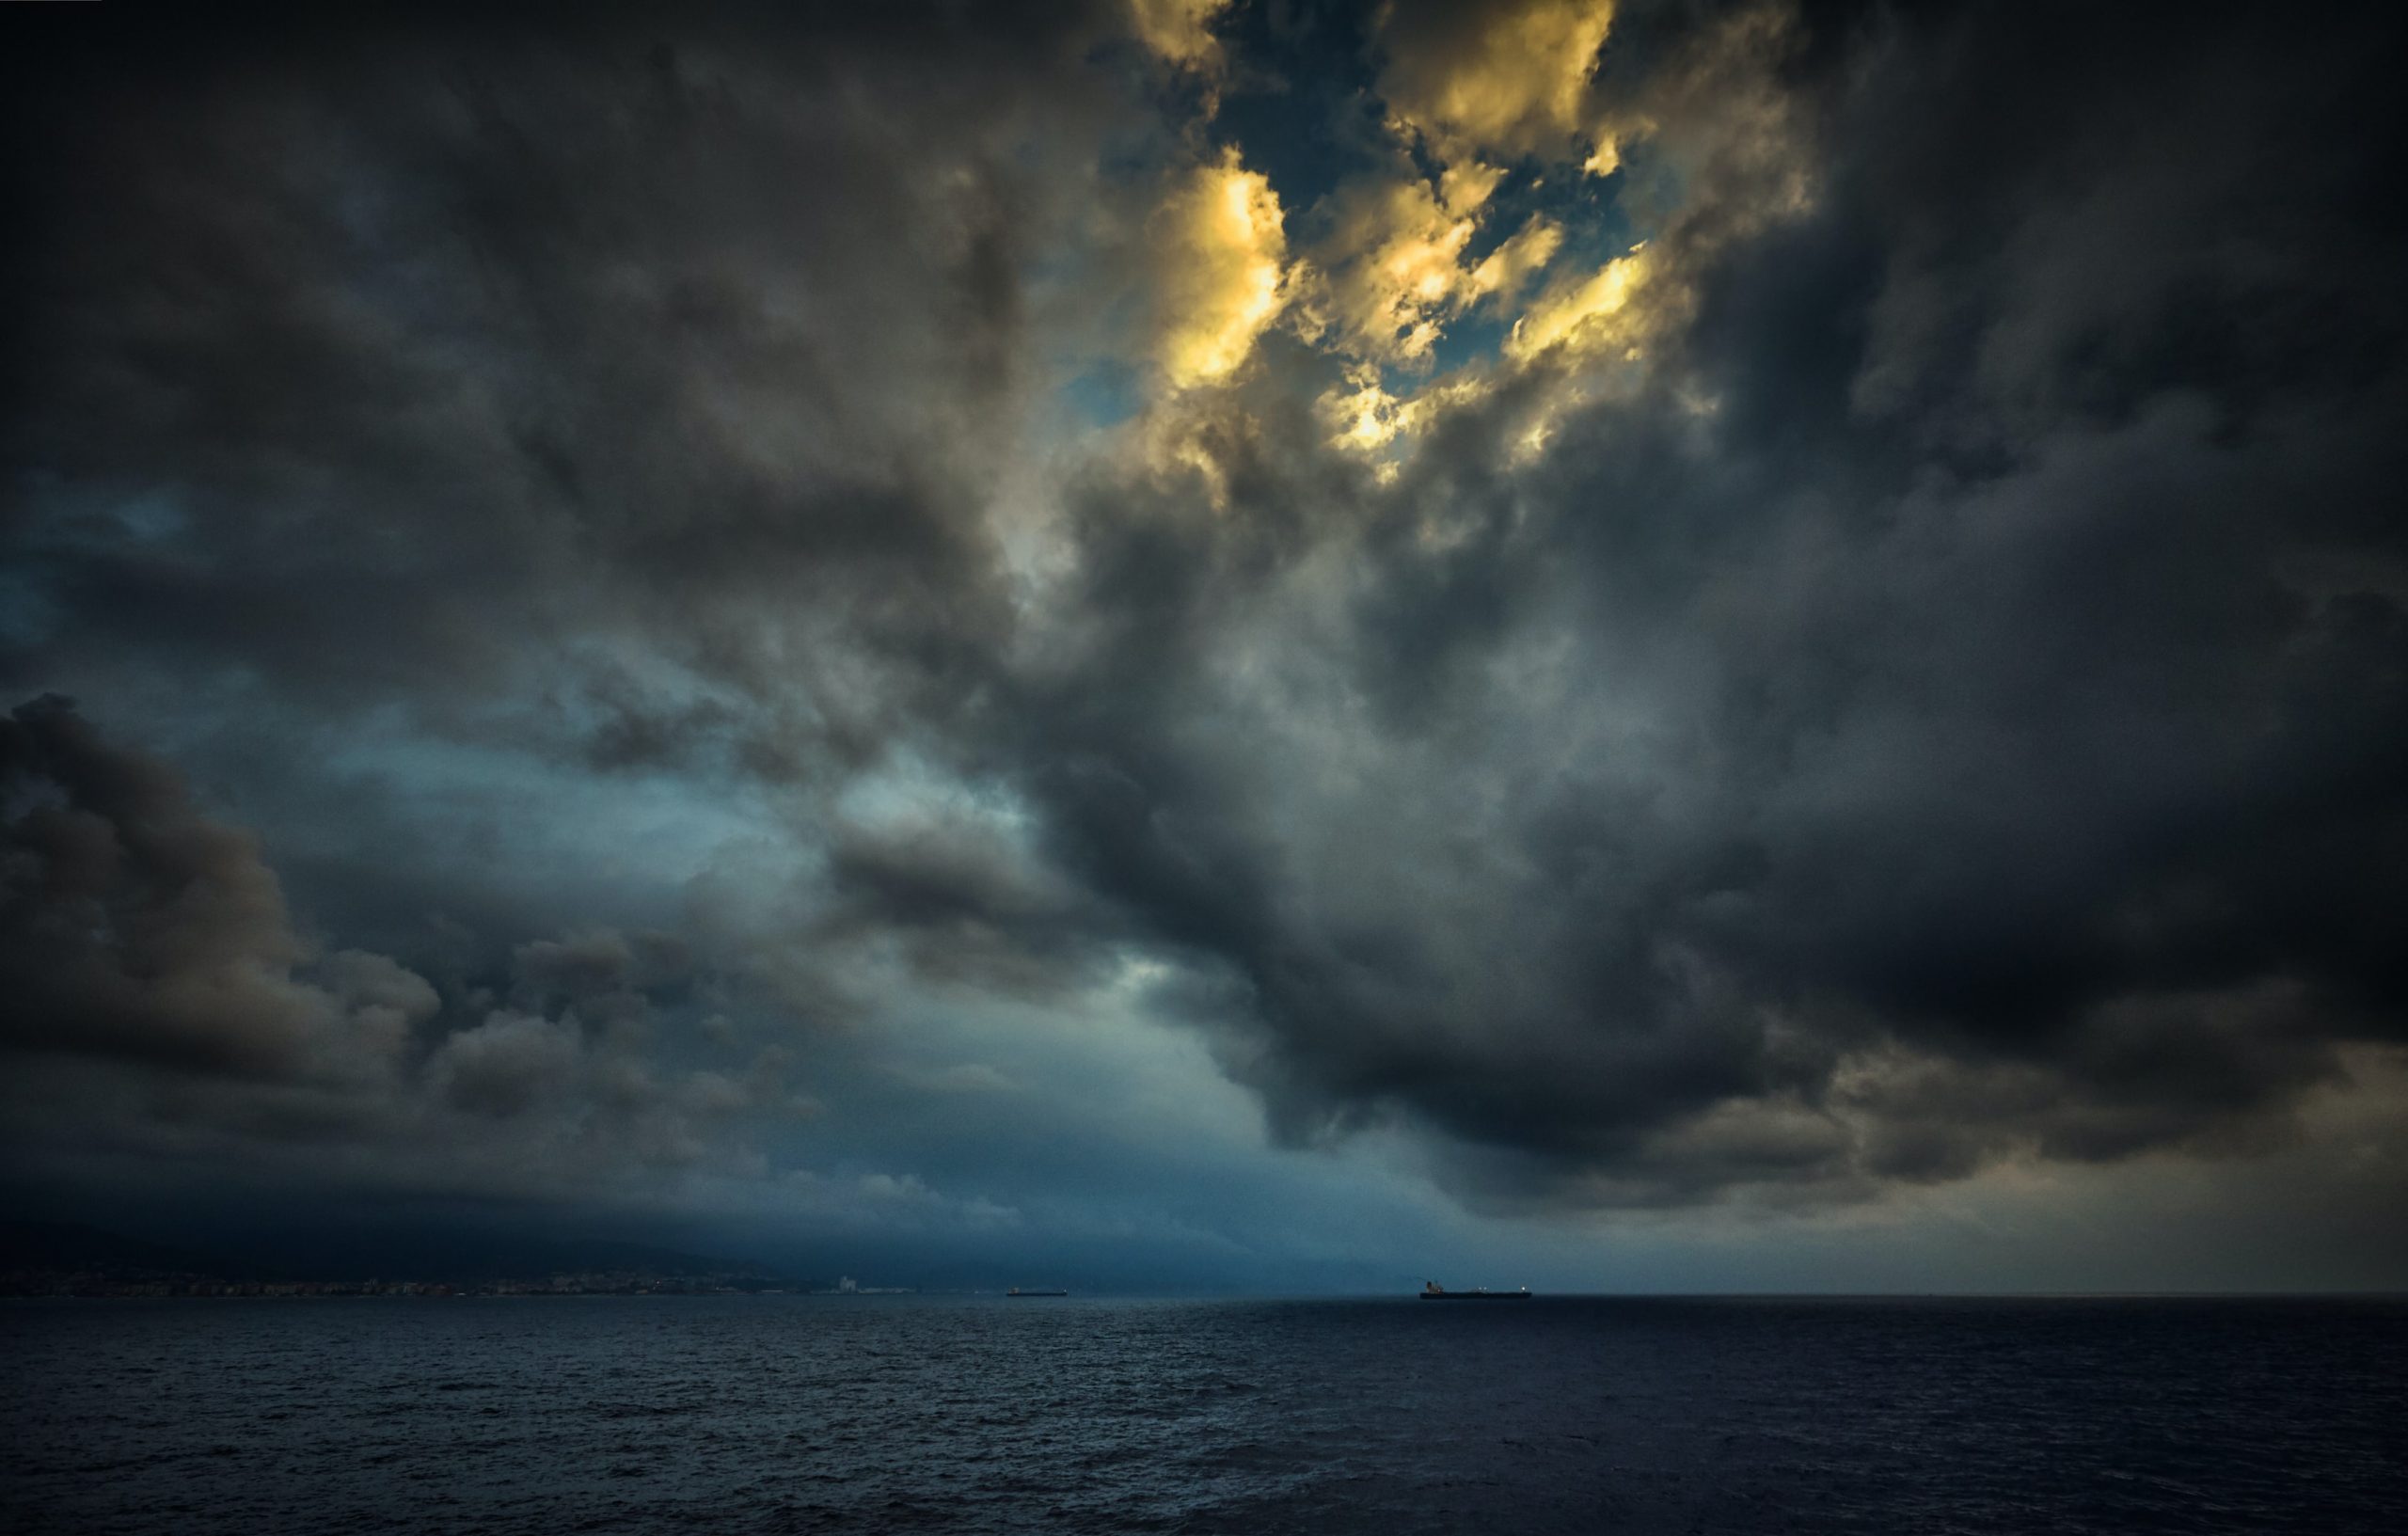 Une photographie d'un océan calme et noir à minuit. Au-dessus, le ciel est d'un bleu sombre et est rempli de nuages d'orage gris et fumés. Au centre de l'amas de nuages, un rayon de soleil pointe à l'horizon.